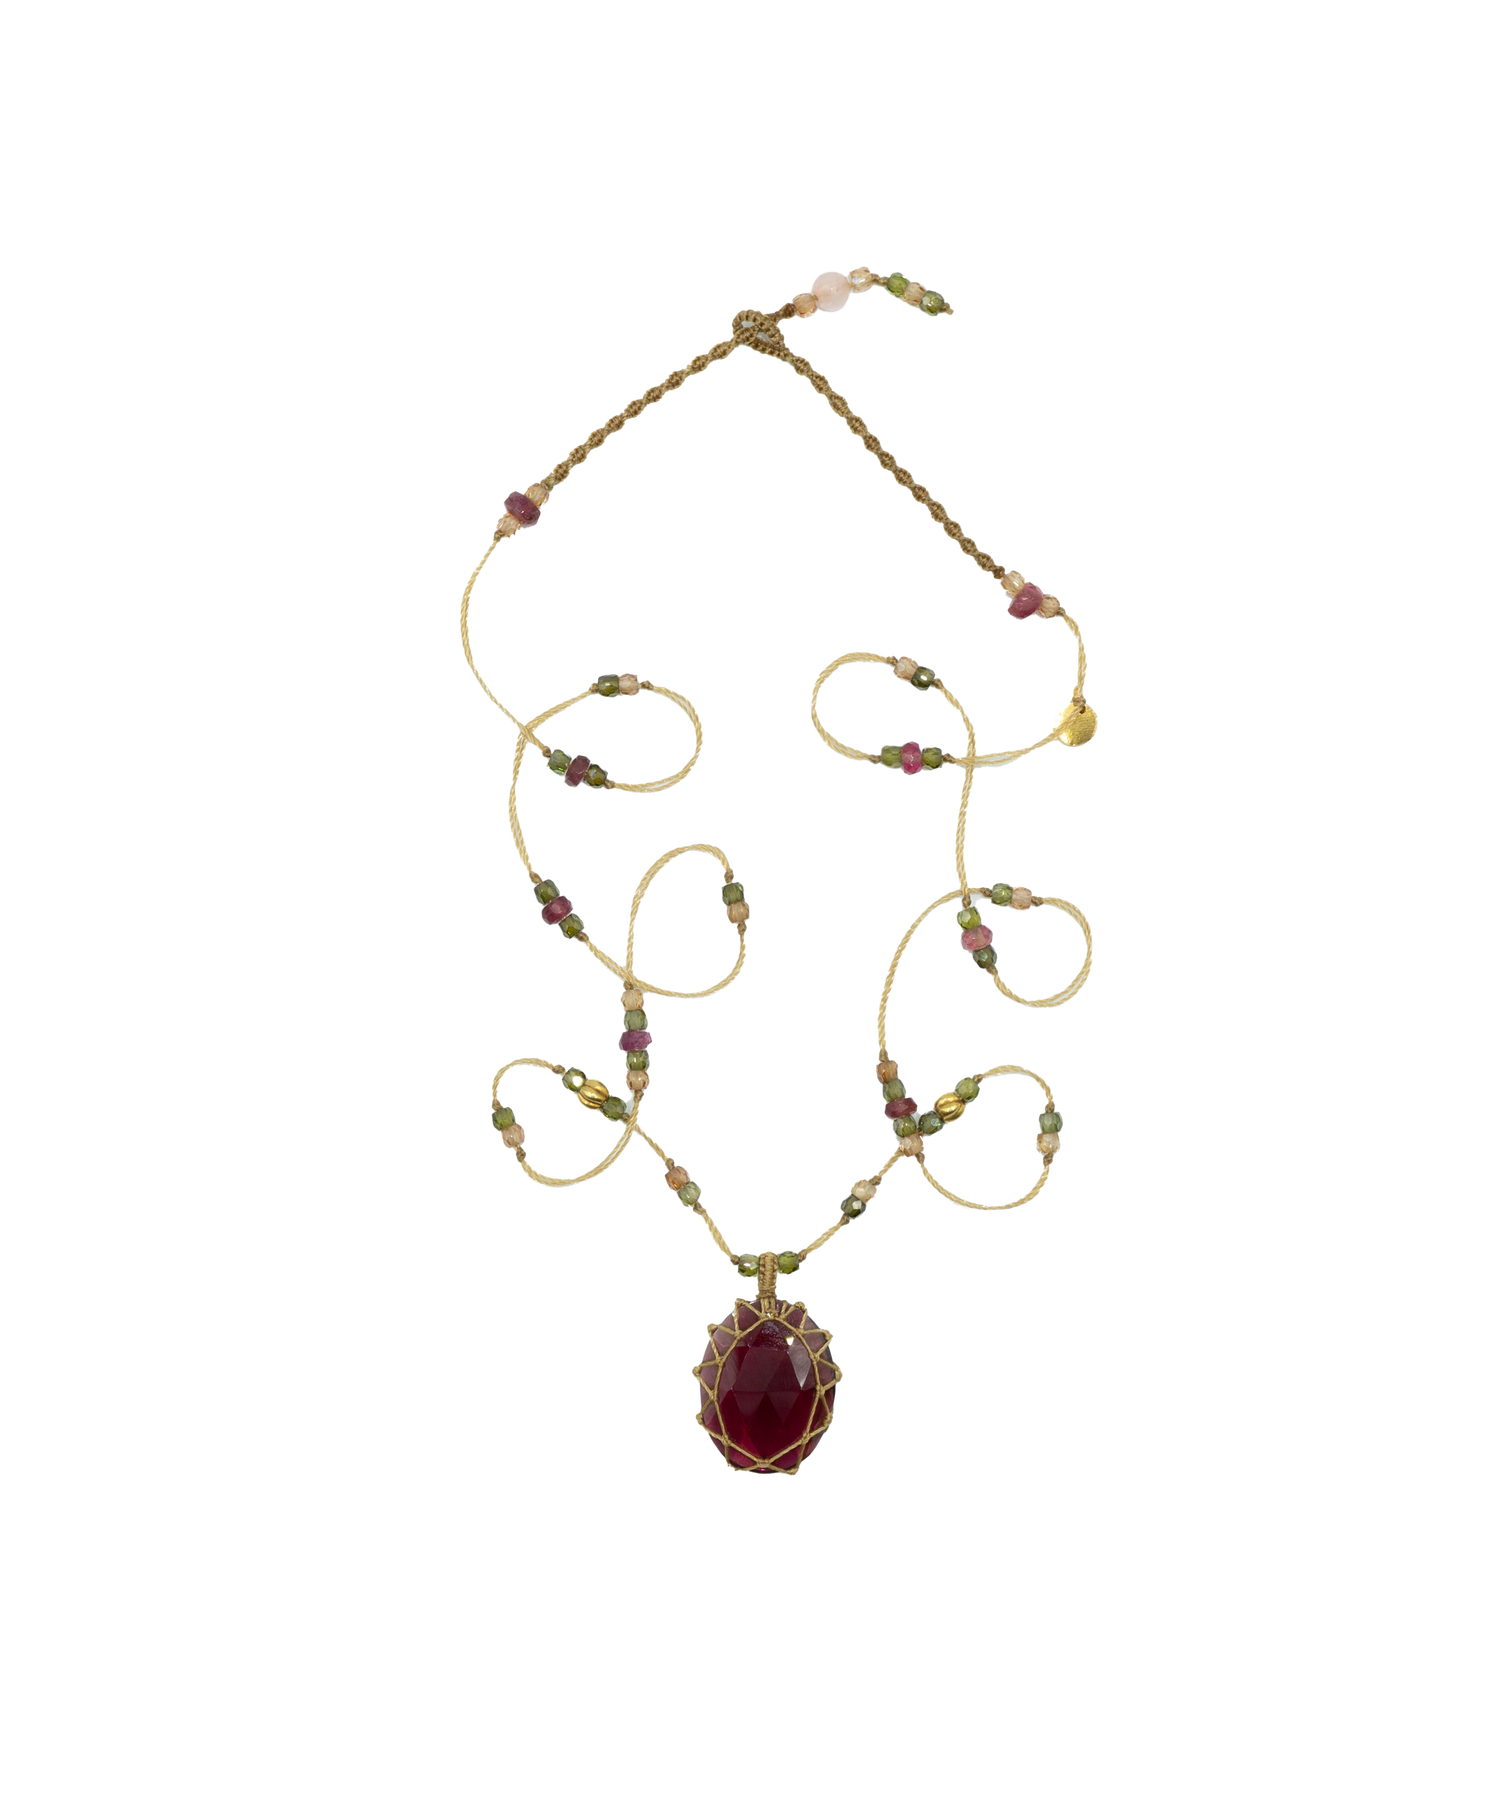 So Precious Short Tibetan Necklace - Red Garnet - Mix Pink Tourmaline - Beige Thread